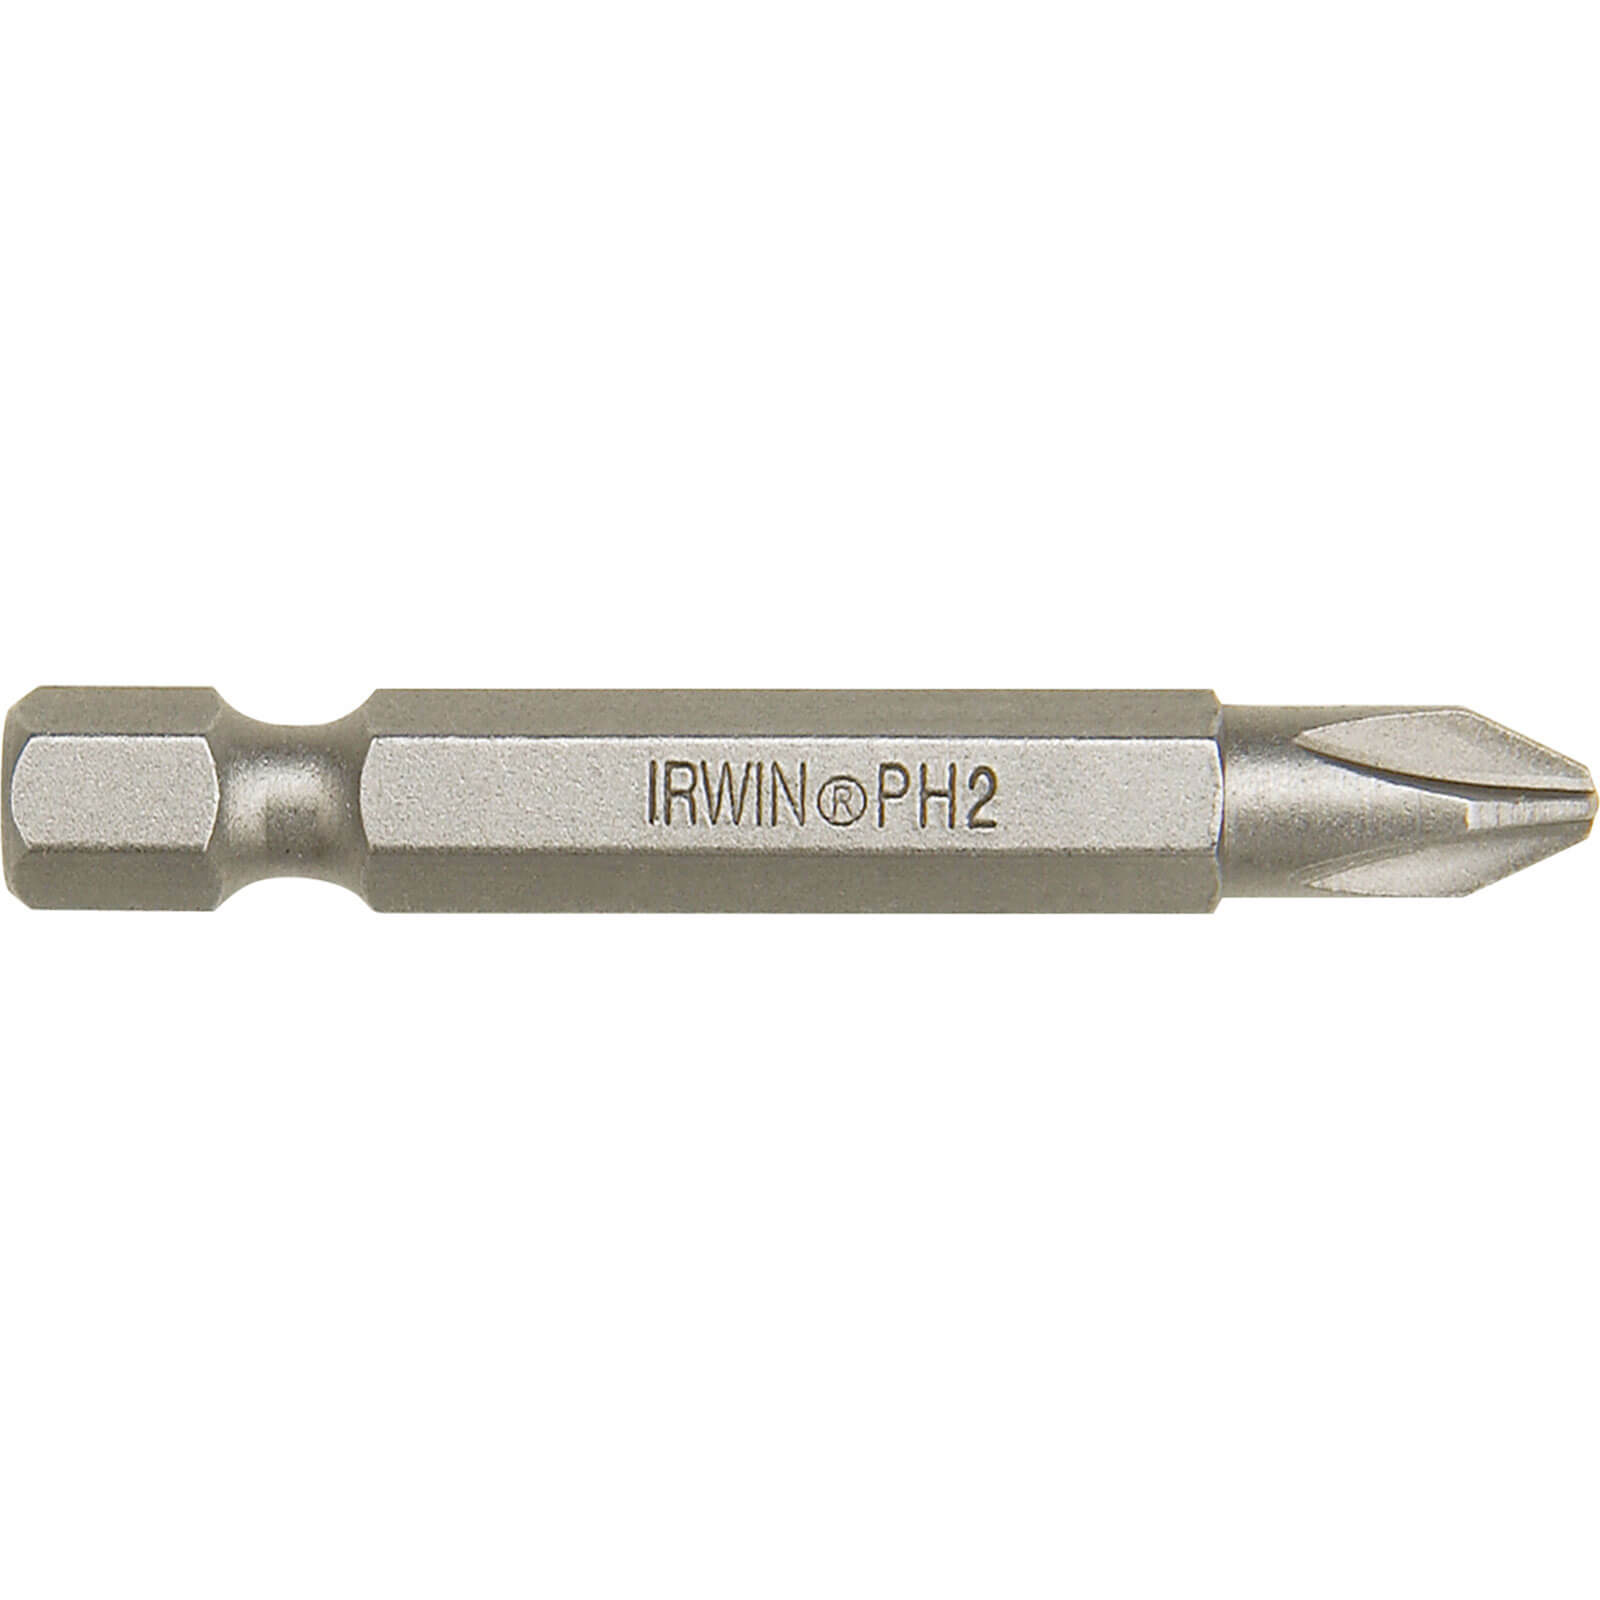 Photo of Irwin Phillips Power Screwdriver Bit Ph2 70mm Pack Of 1